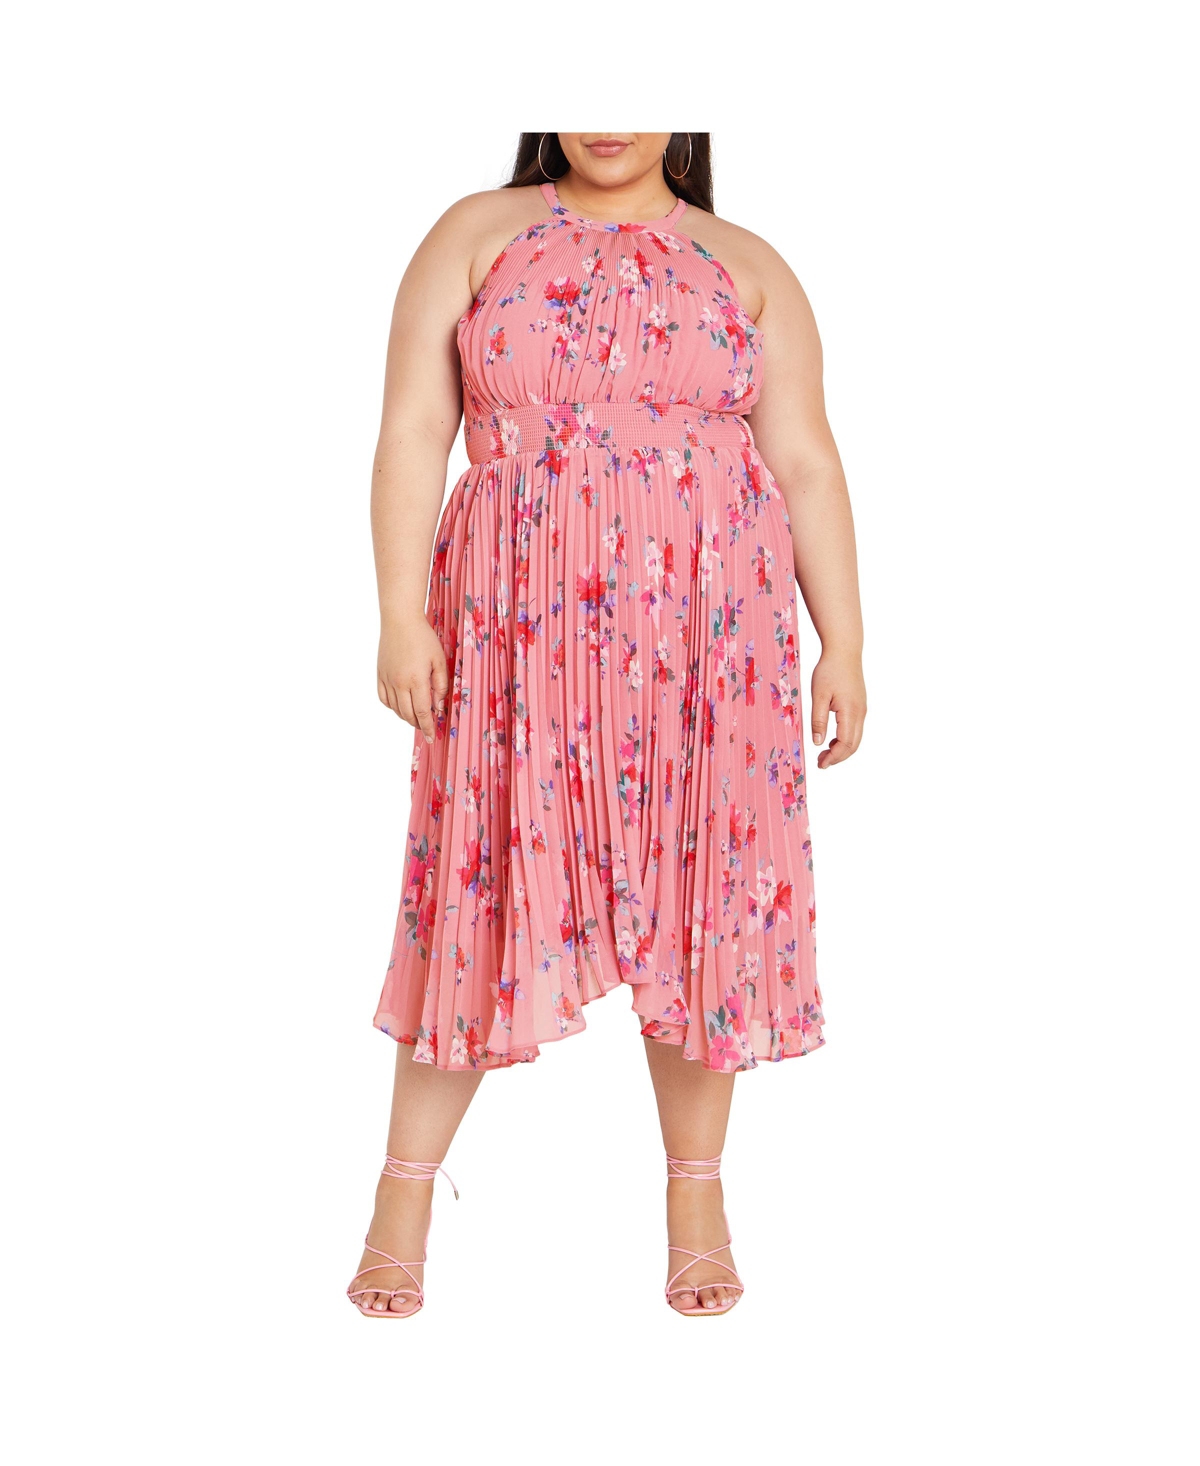 Plus Size Miriam Print Dress - Blush lotte bunch